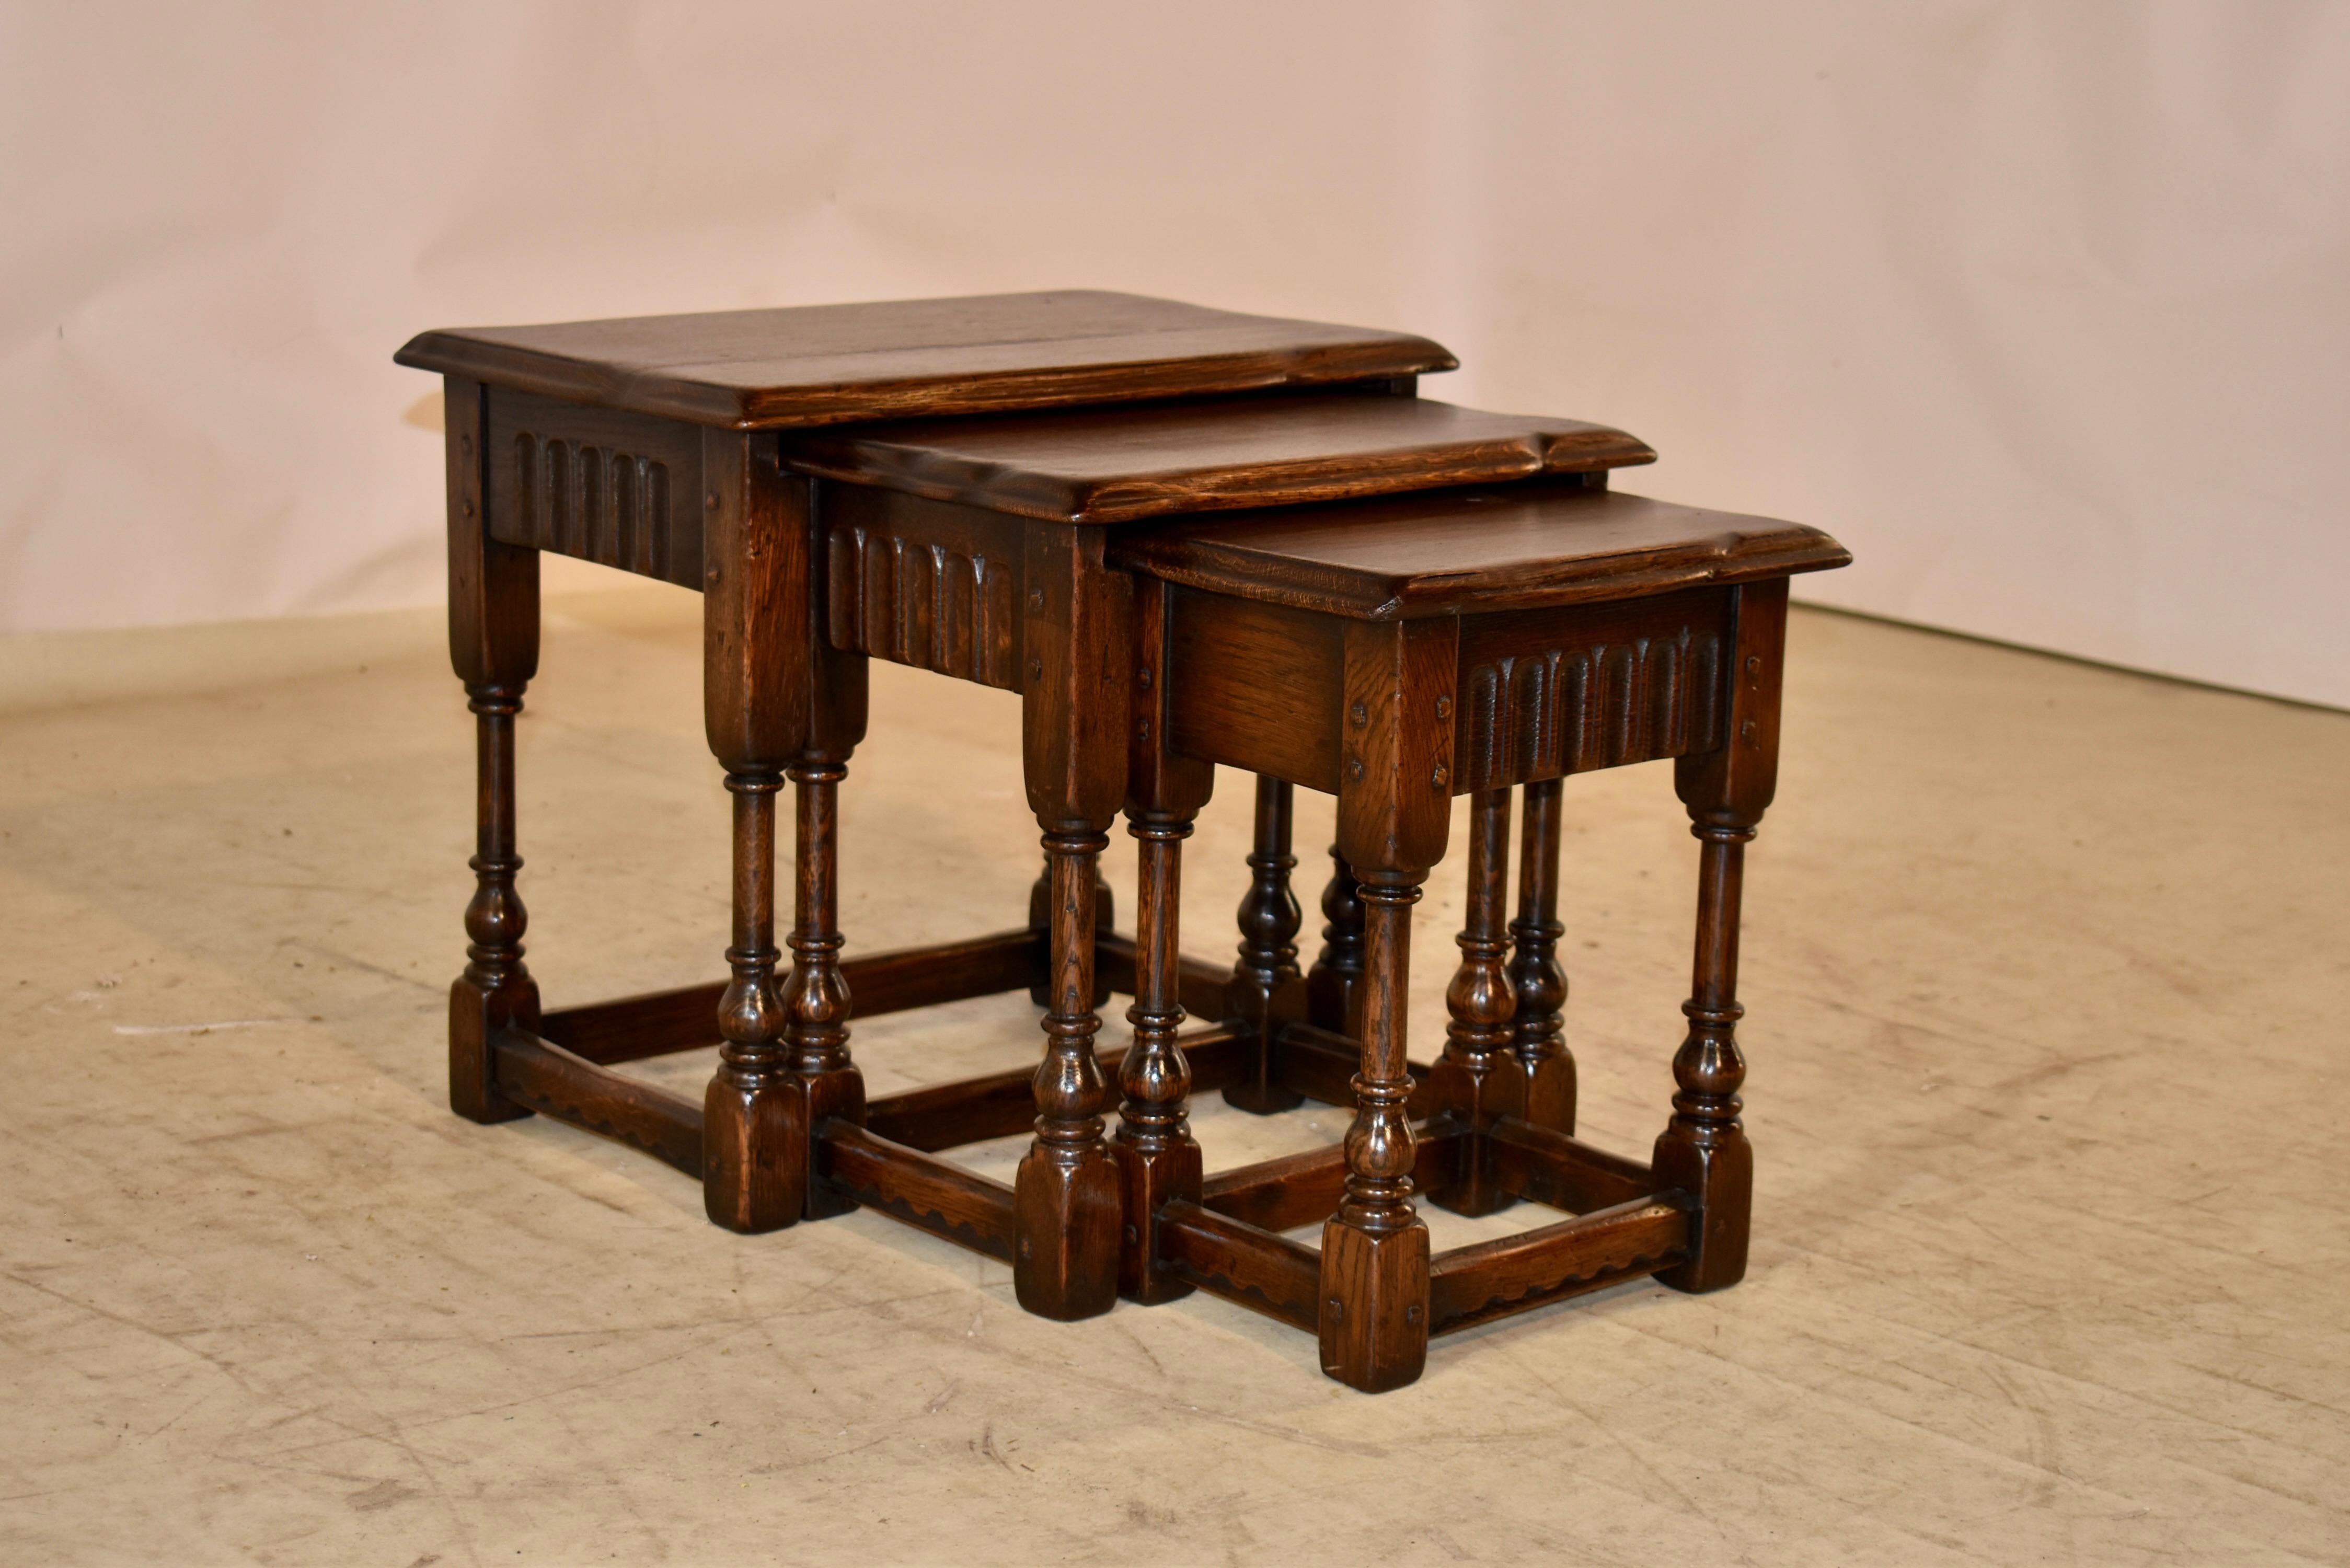 Turned Set of Three Edwardian Nested Tables, C. 1900